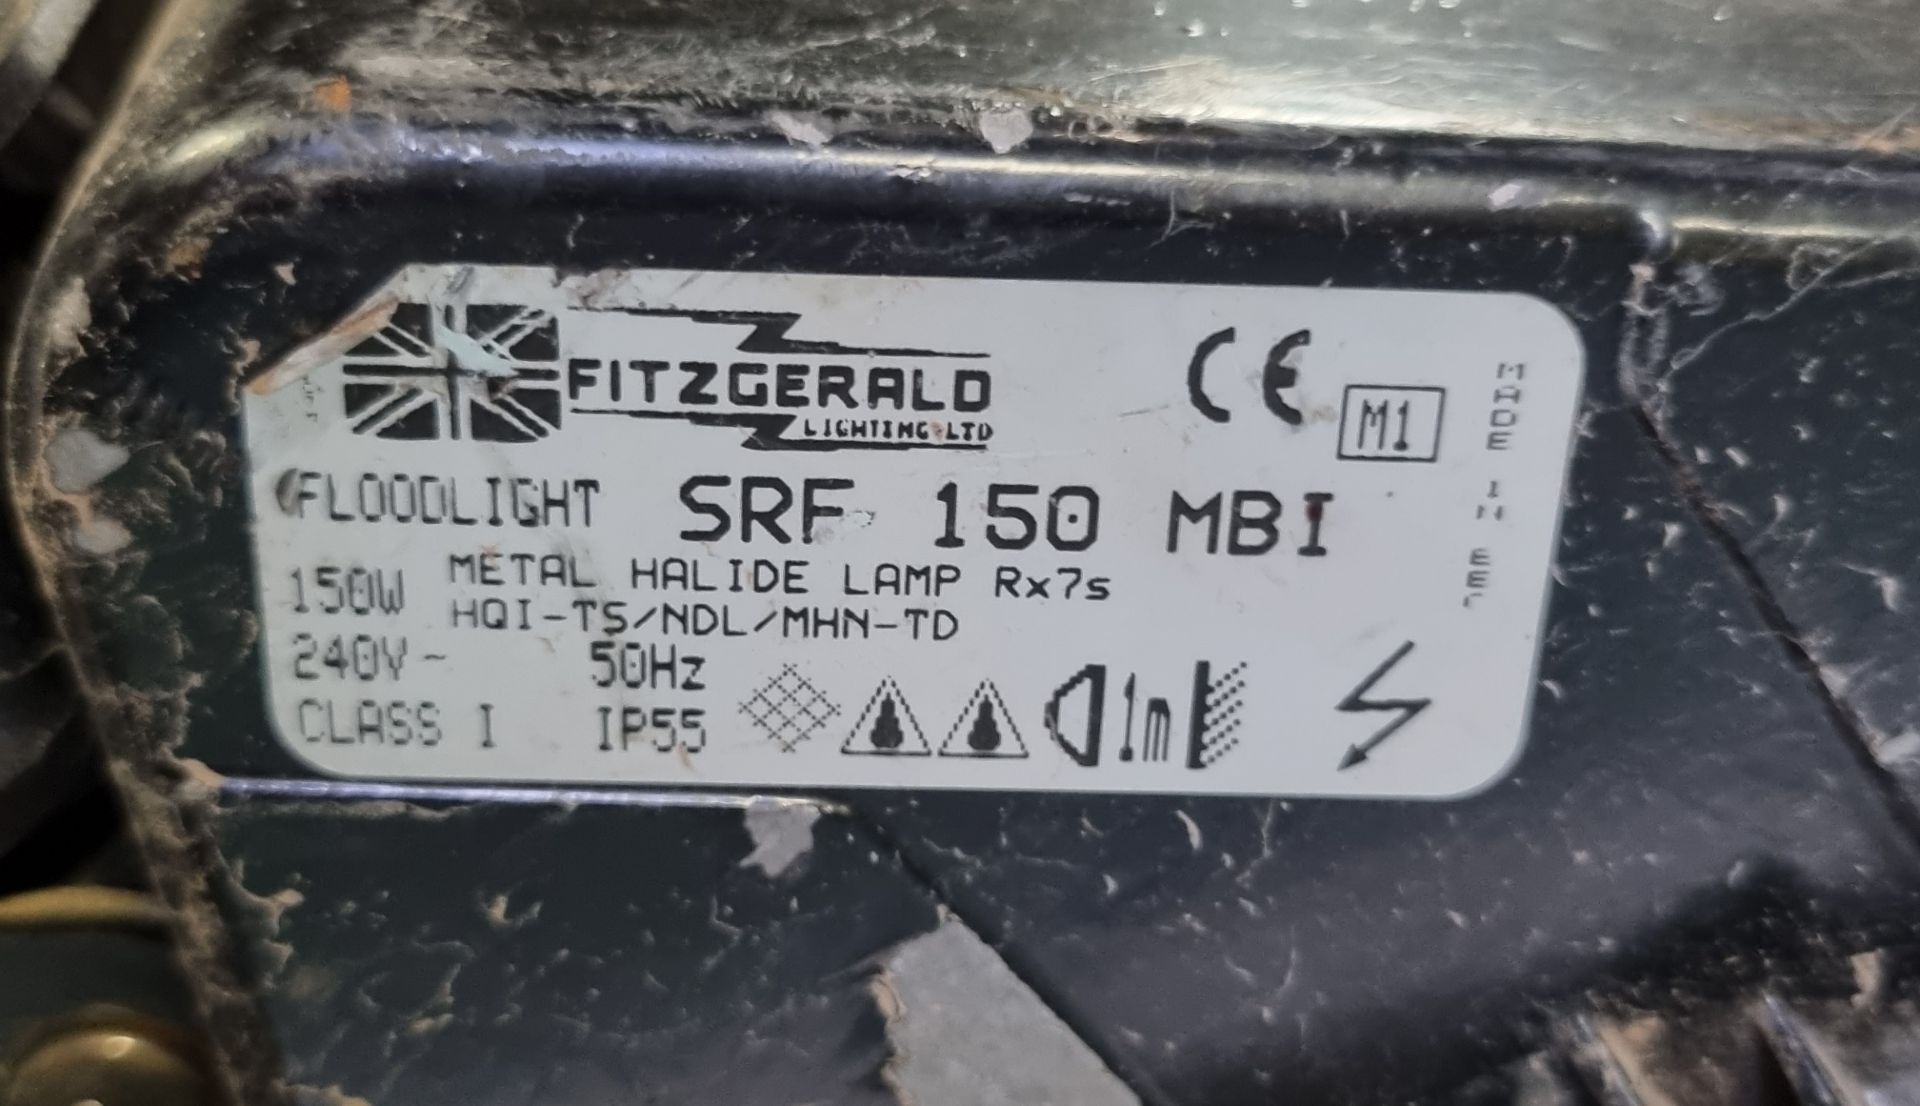 4x Fitzgerald SRF150 150W floodlights - Bild 4 aus 4